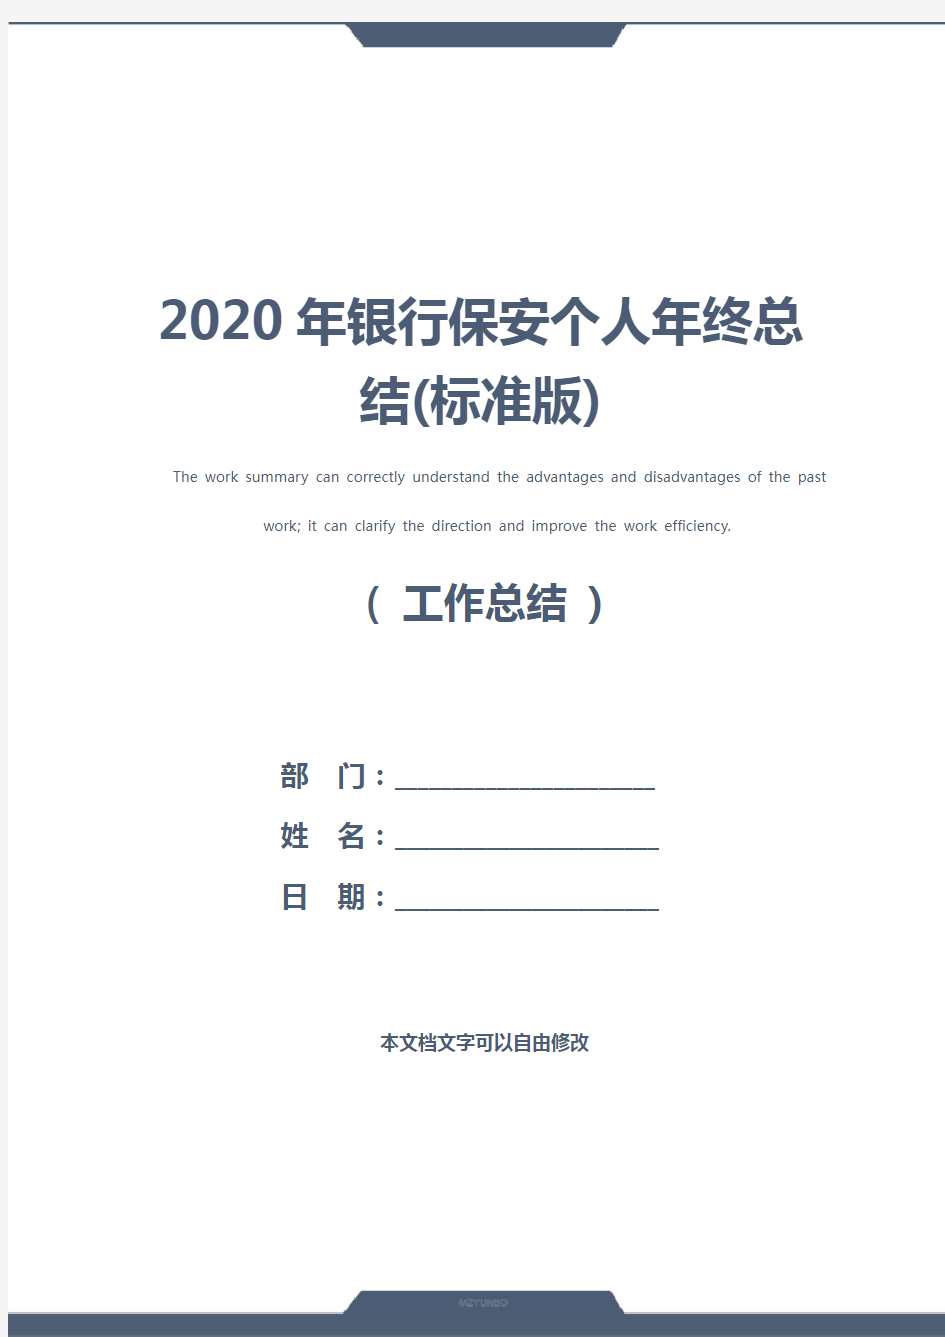 2020年银行保安个人年终总结(标准版)